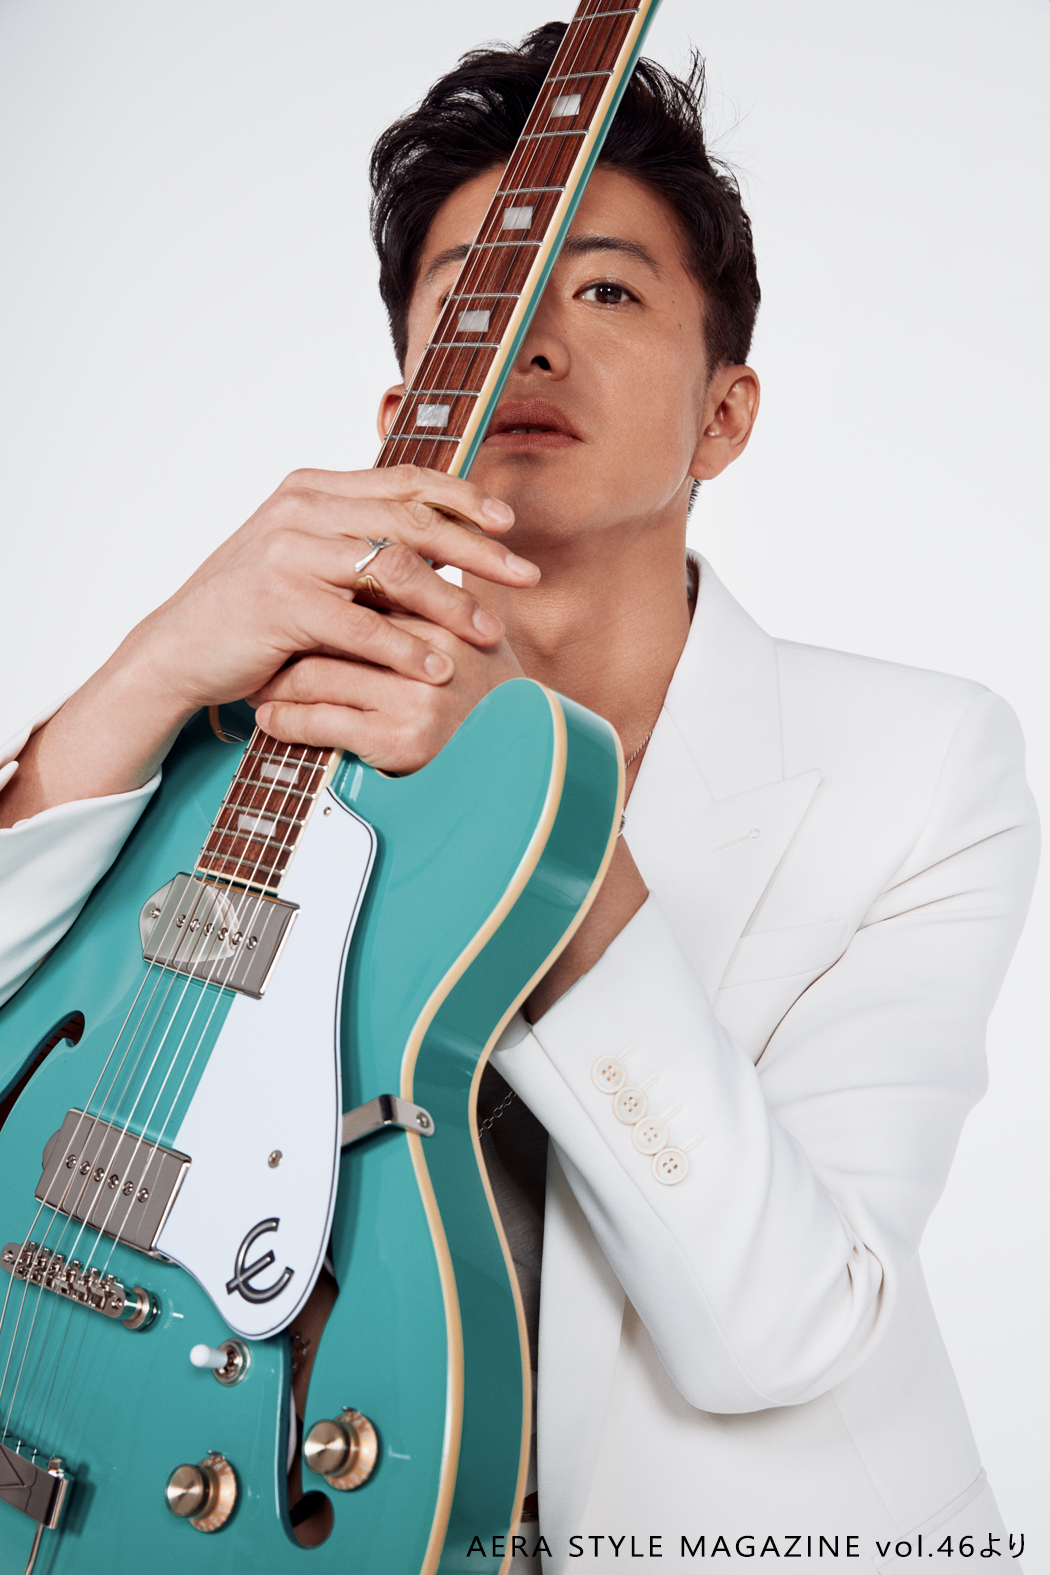 木村拓哉 白スーツ姿の ギターshot を公開 E Talentbank Co Ltd